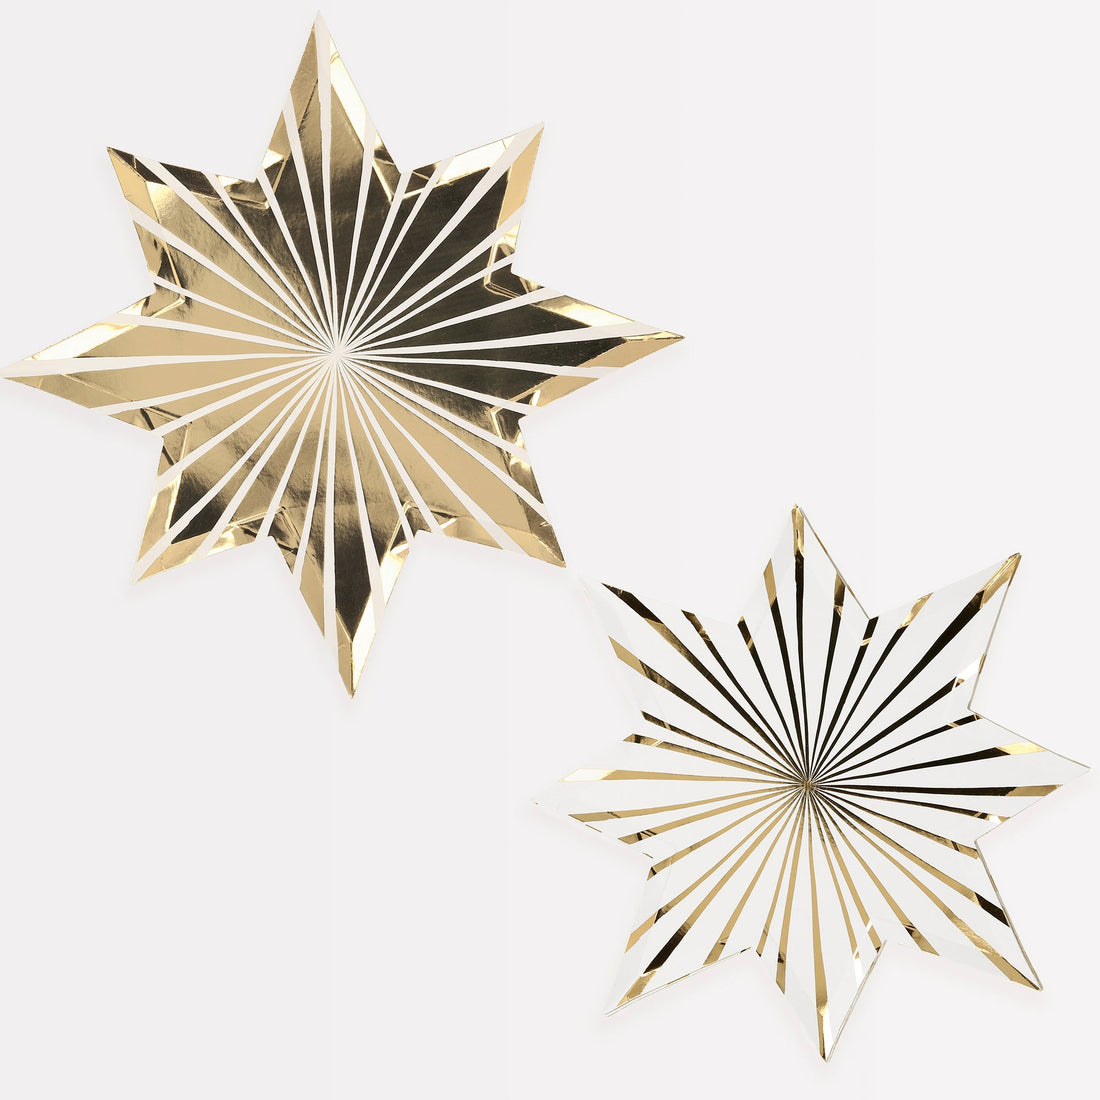 Two Meri Meri Gold Stripe Star Plates on a white background.